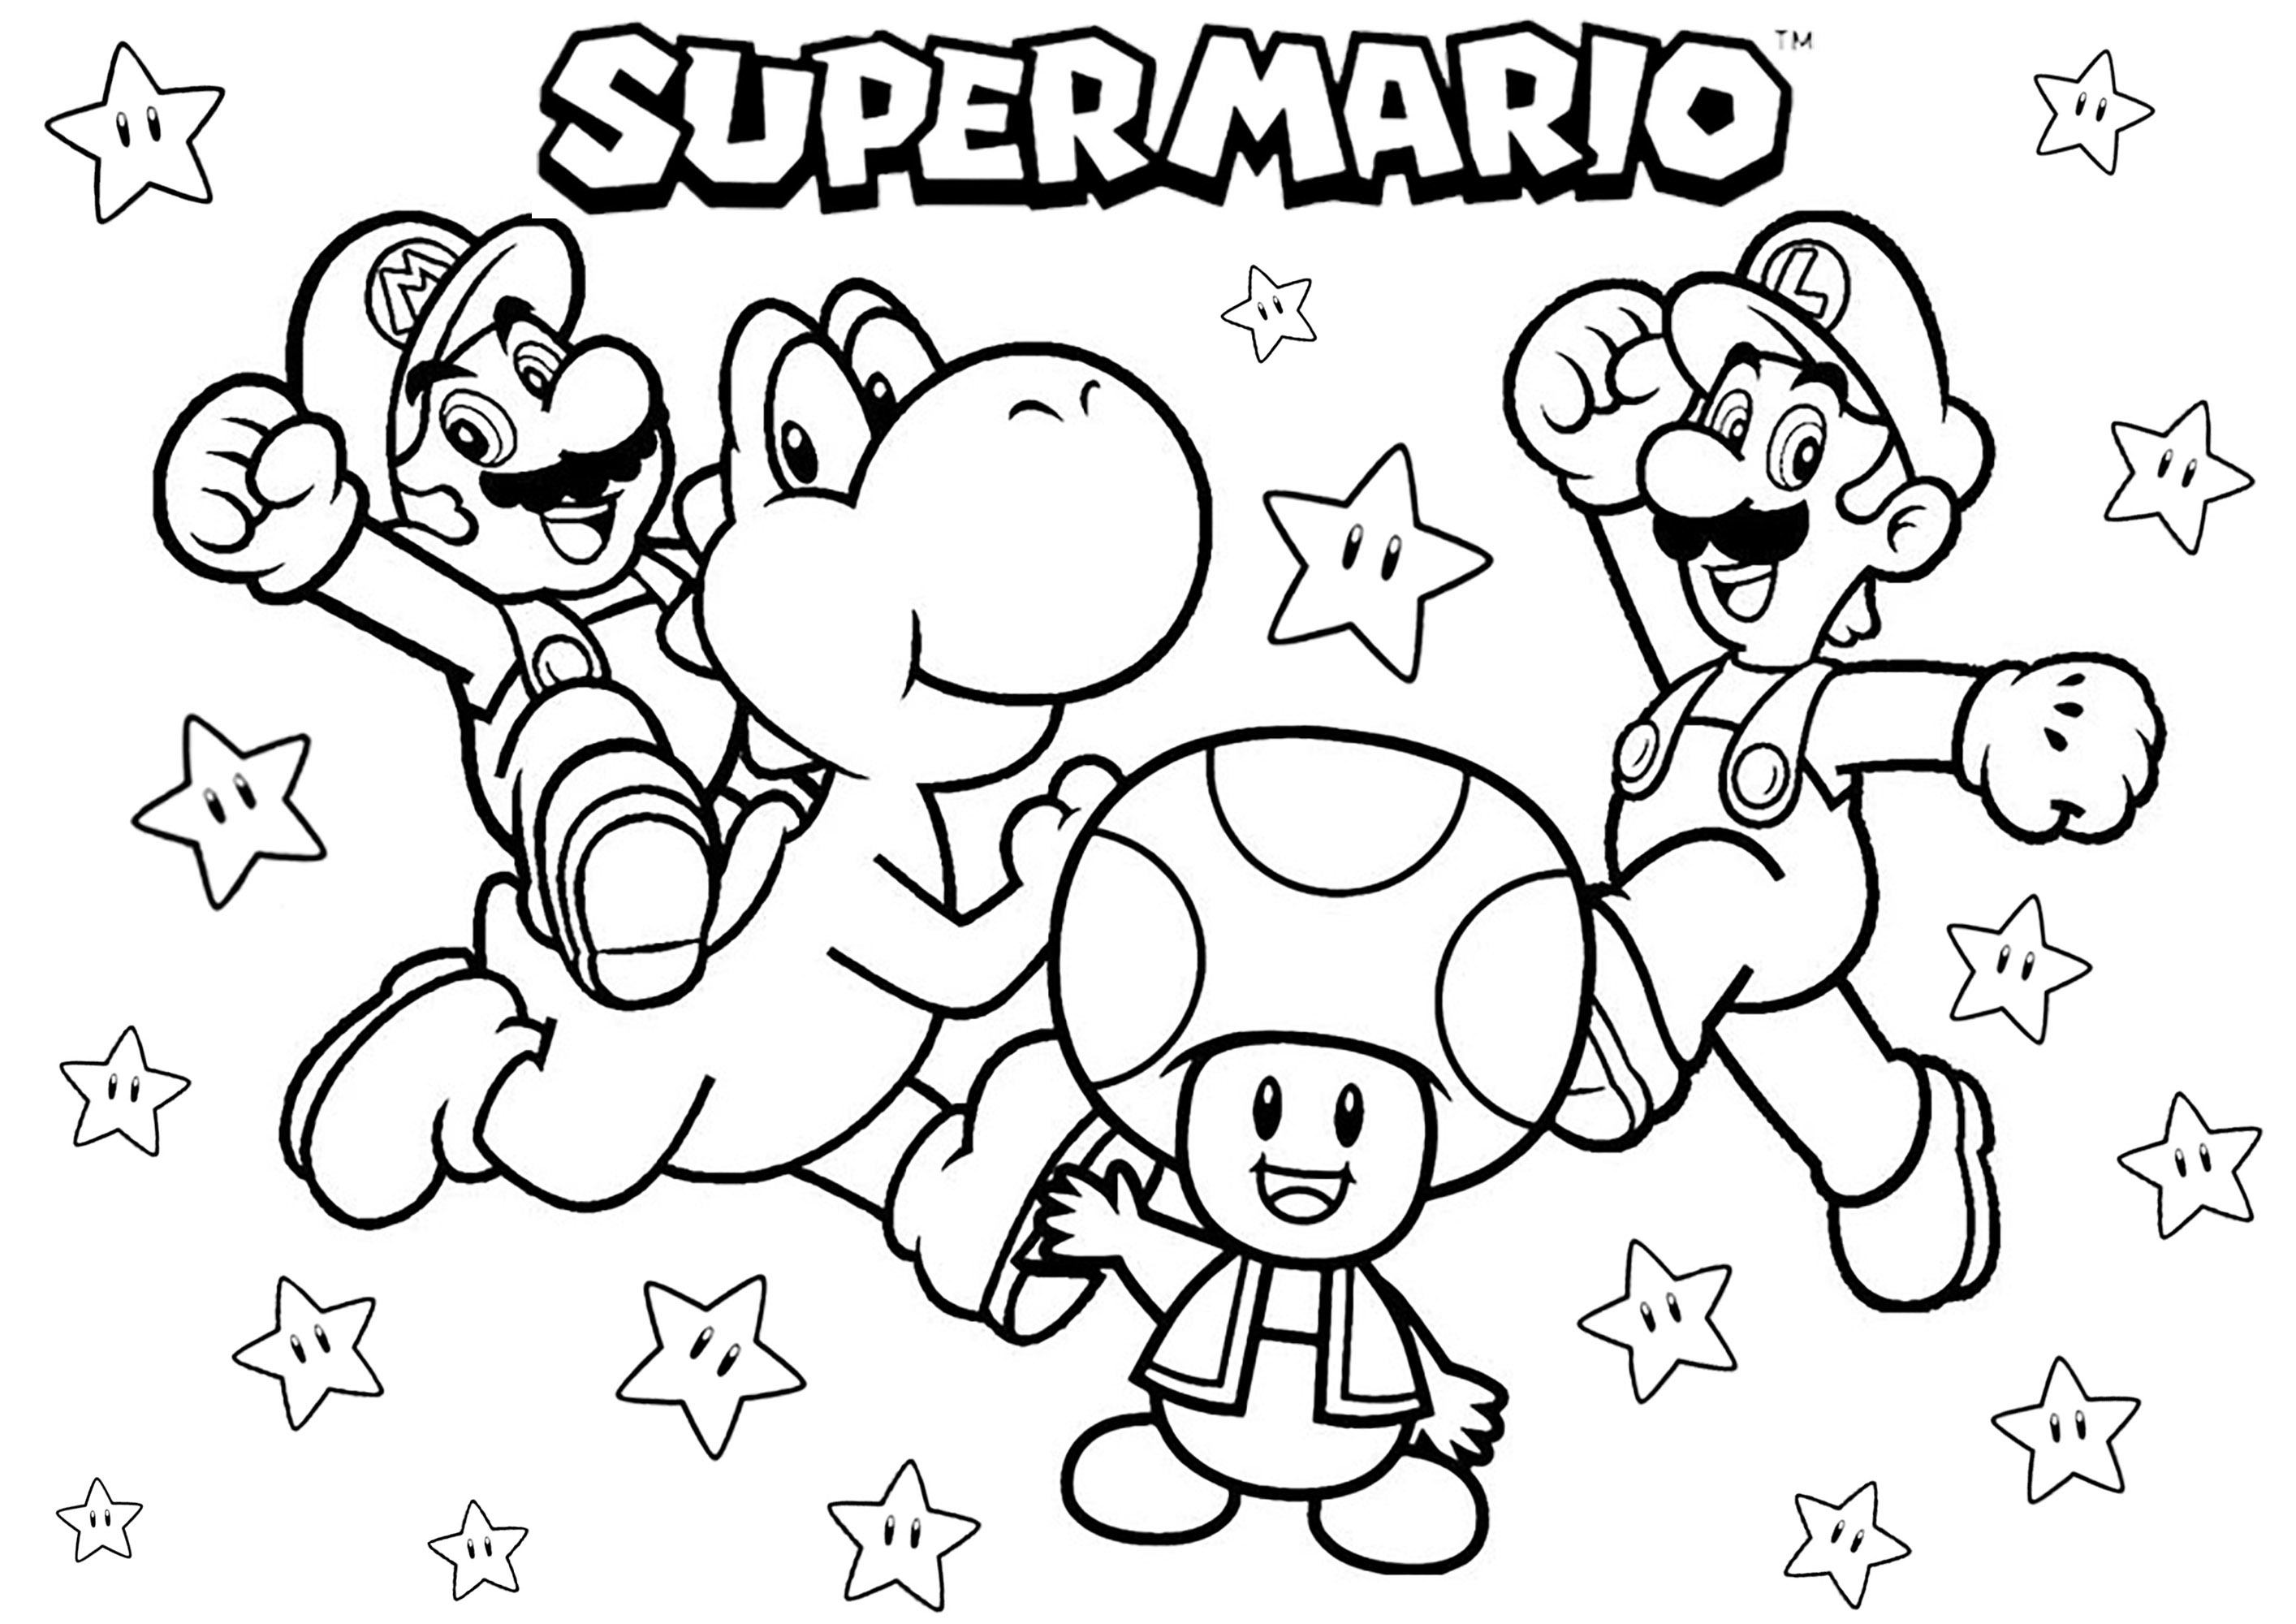 Mario, Luigi, Yoshi et Toad. Ricordate i tempi in cui giocavate a Super Mario sulla vostra console Nintendo, grazie a questa simpatica pagina da colorare con i fratelli Mario e Luigi, il dinosauro Yoshi e il fungo Toad... per non parlare di tante stelle!